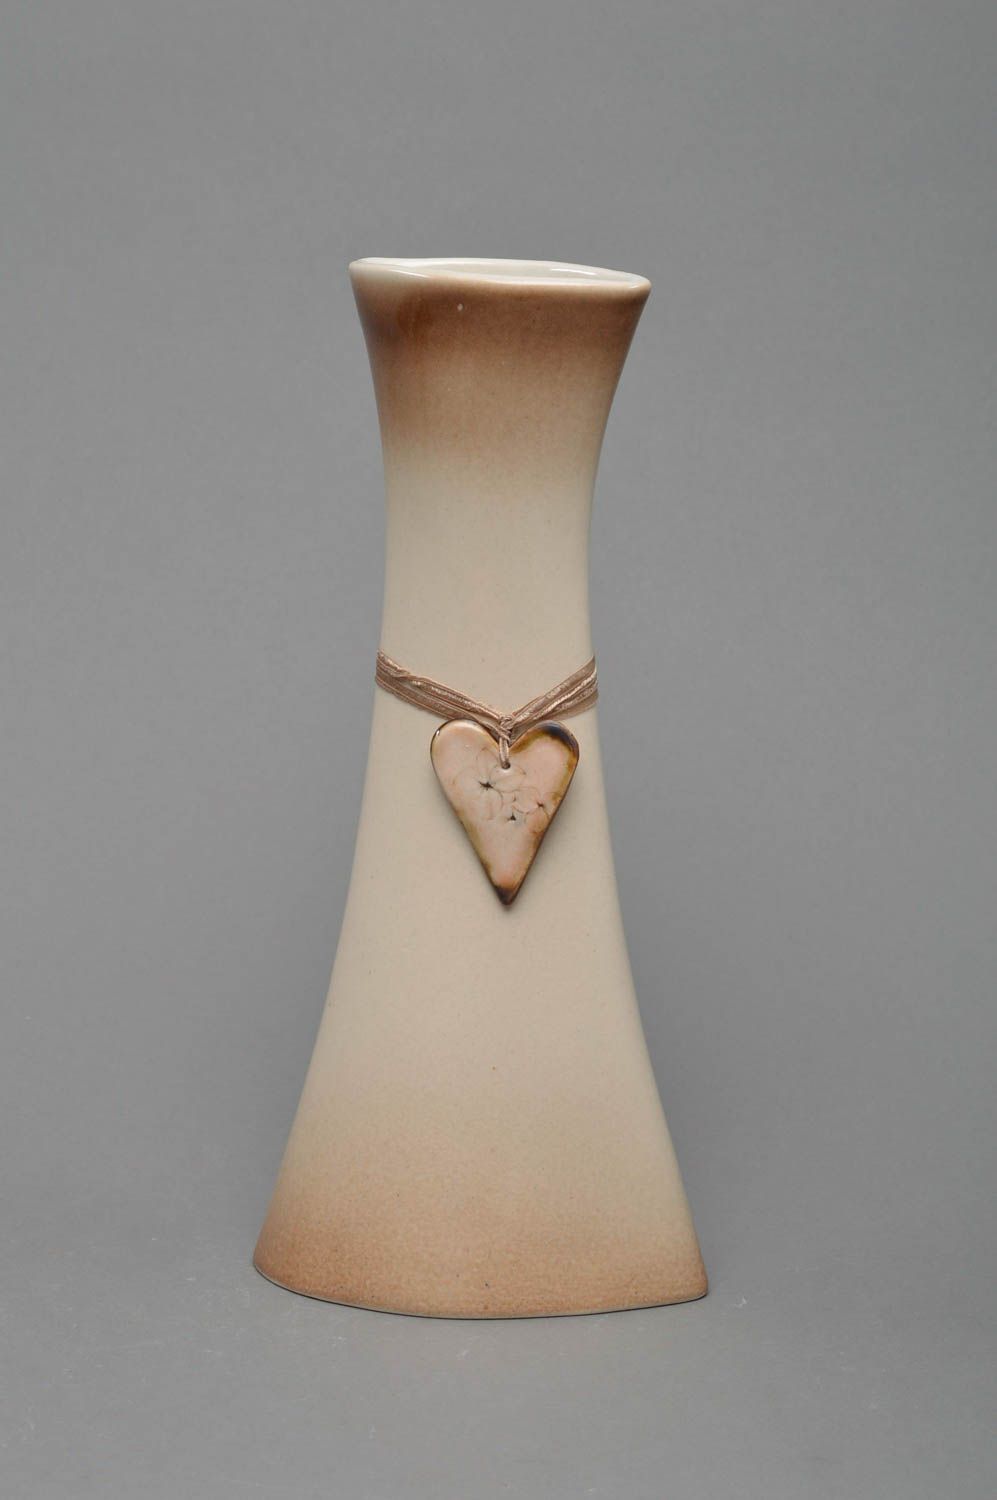 Фарфоровая ваза высокая бежевого цвета красивая необычной формы ручная работа фото 1